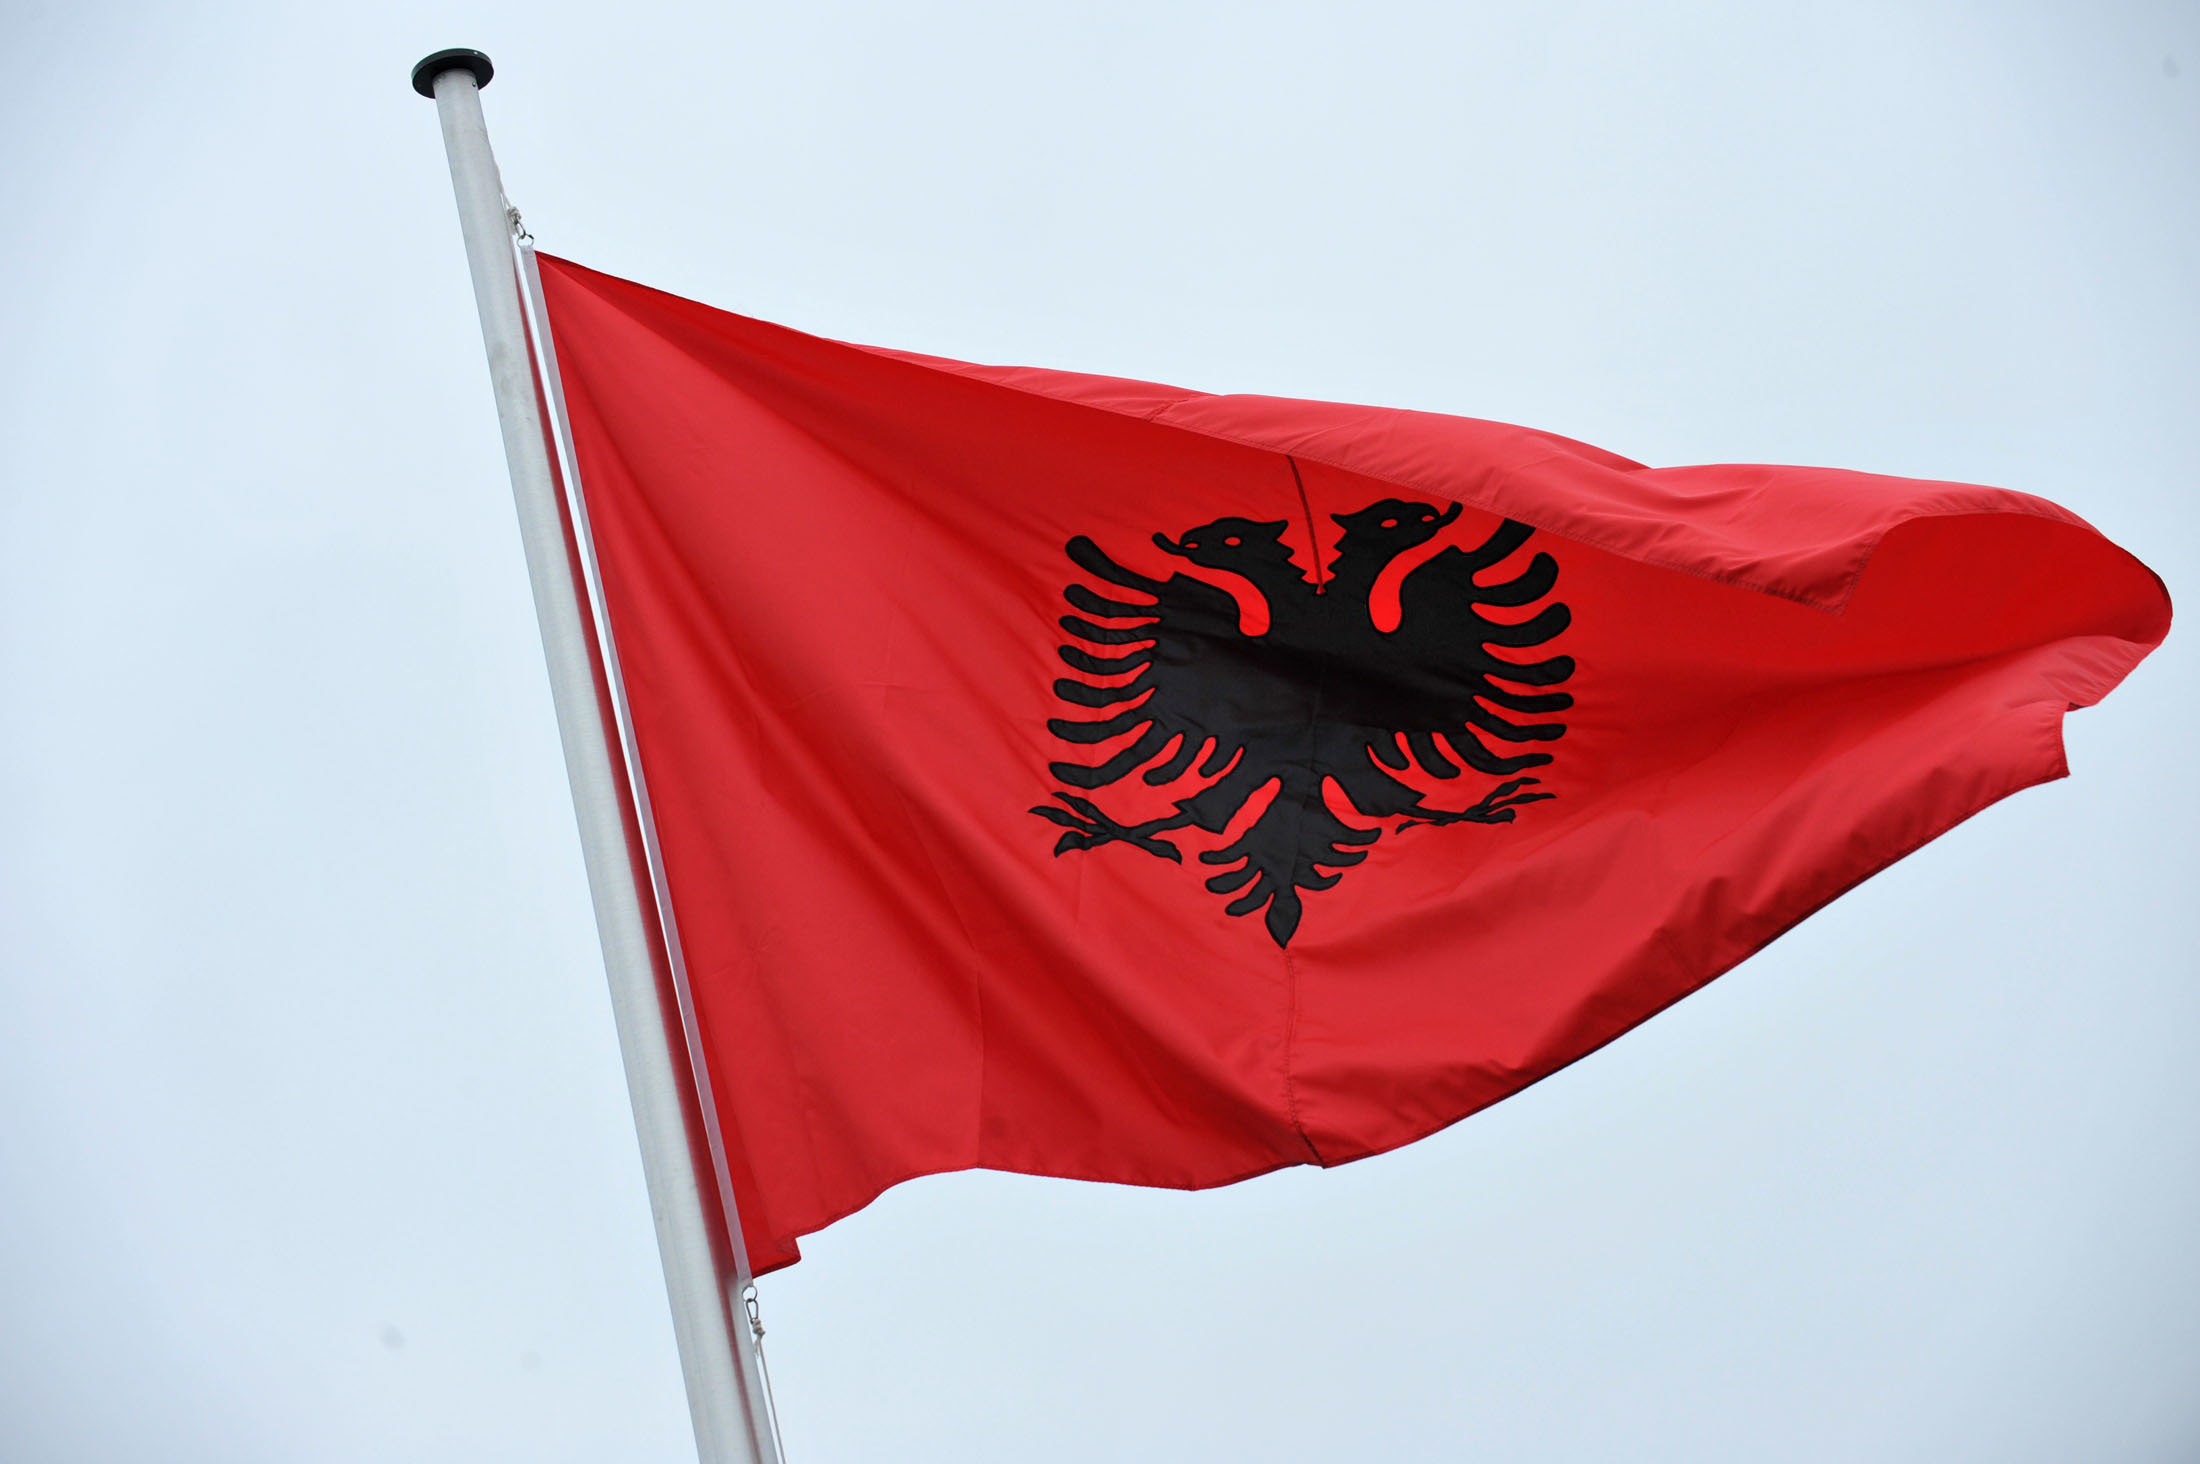 Πιθανό να καταστραφούν τα χημικά όπλα της Συρίας στην Αλβανία